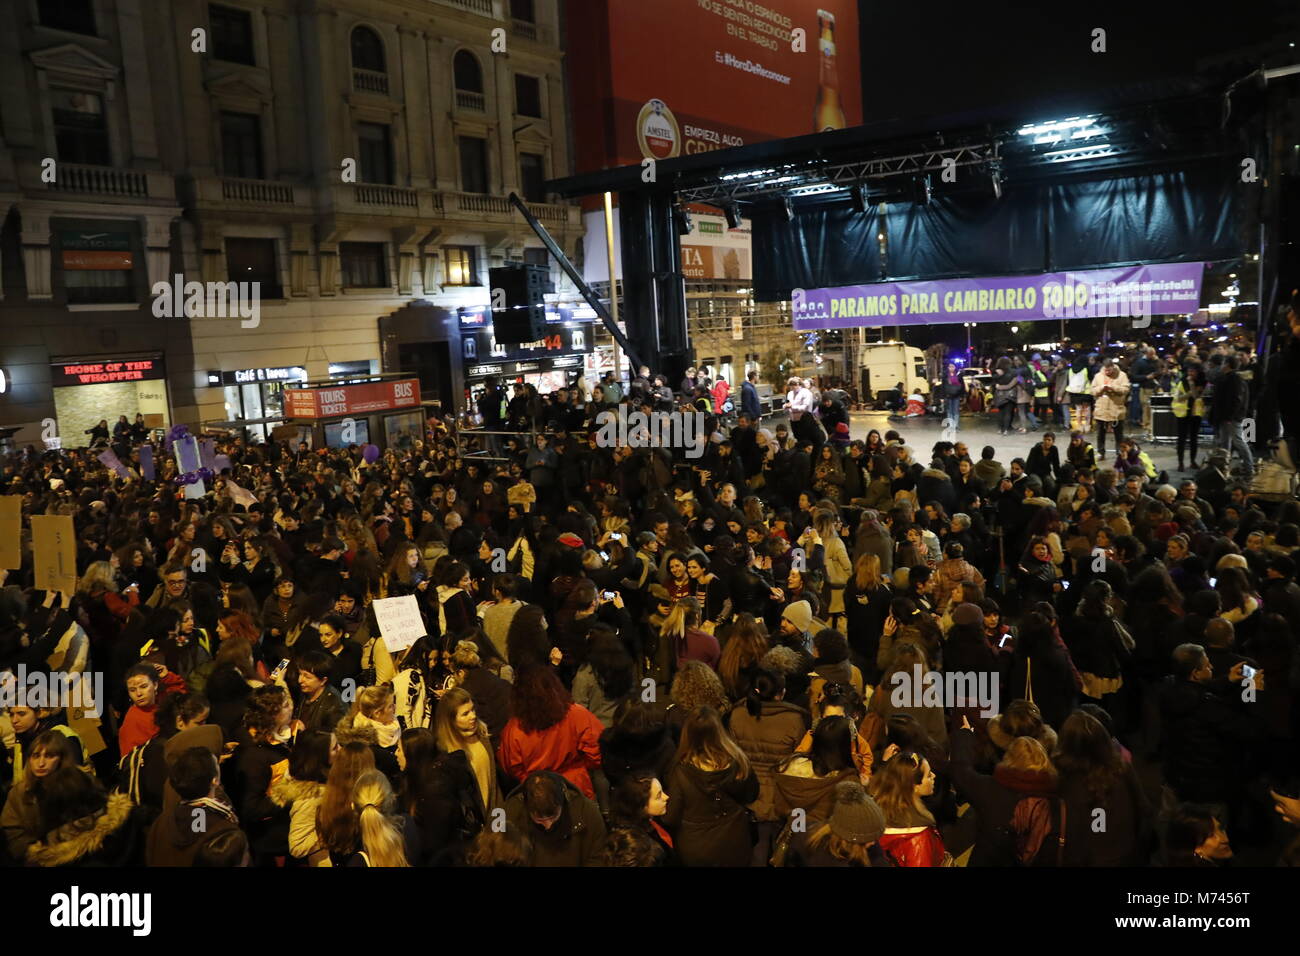 Le donne di spagnolo durante un raduno per celebrare la Giornata internazionale della donna in Puerta del Sol di Madrid, Madrid, giovedì 8 marzo 2018. Credito: Gtres Información más Comuniación on line, S.L./Alamy Live News Foto Stock